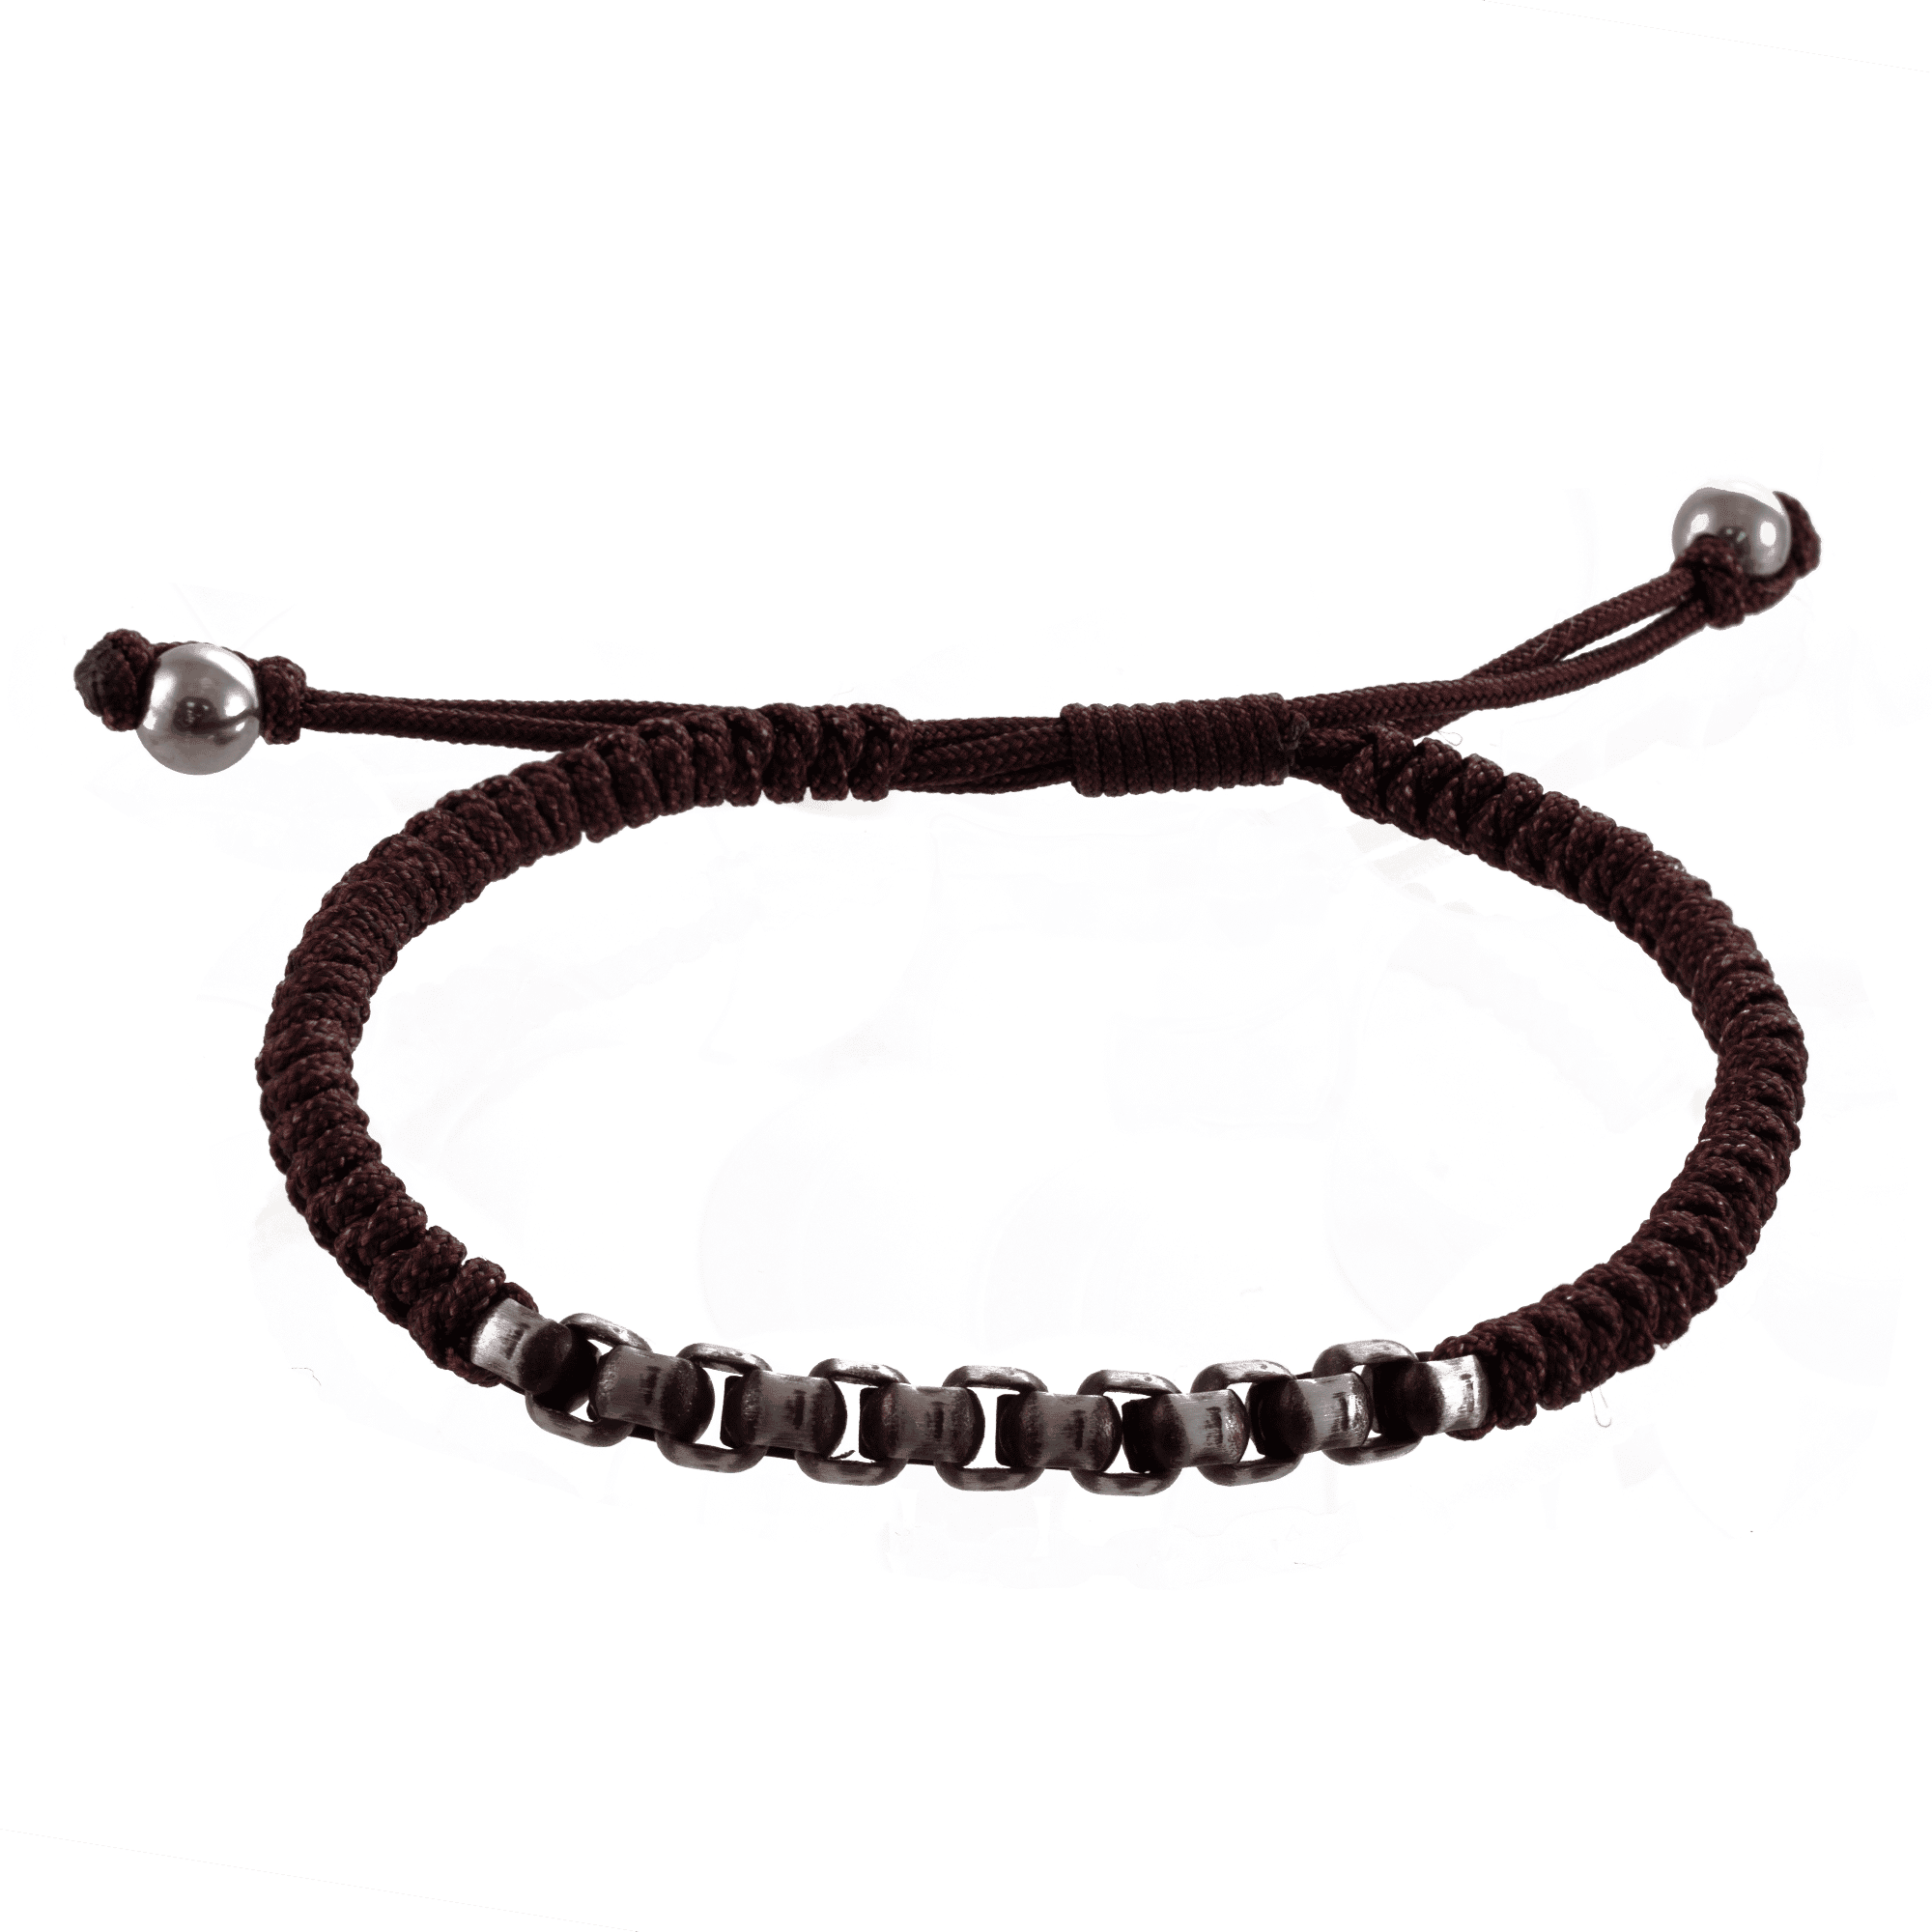 Adjustable Chain Link Bracelet